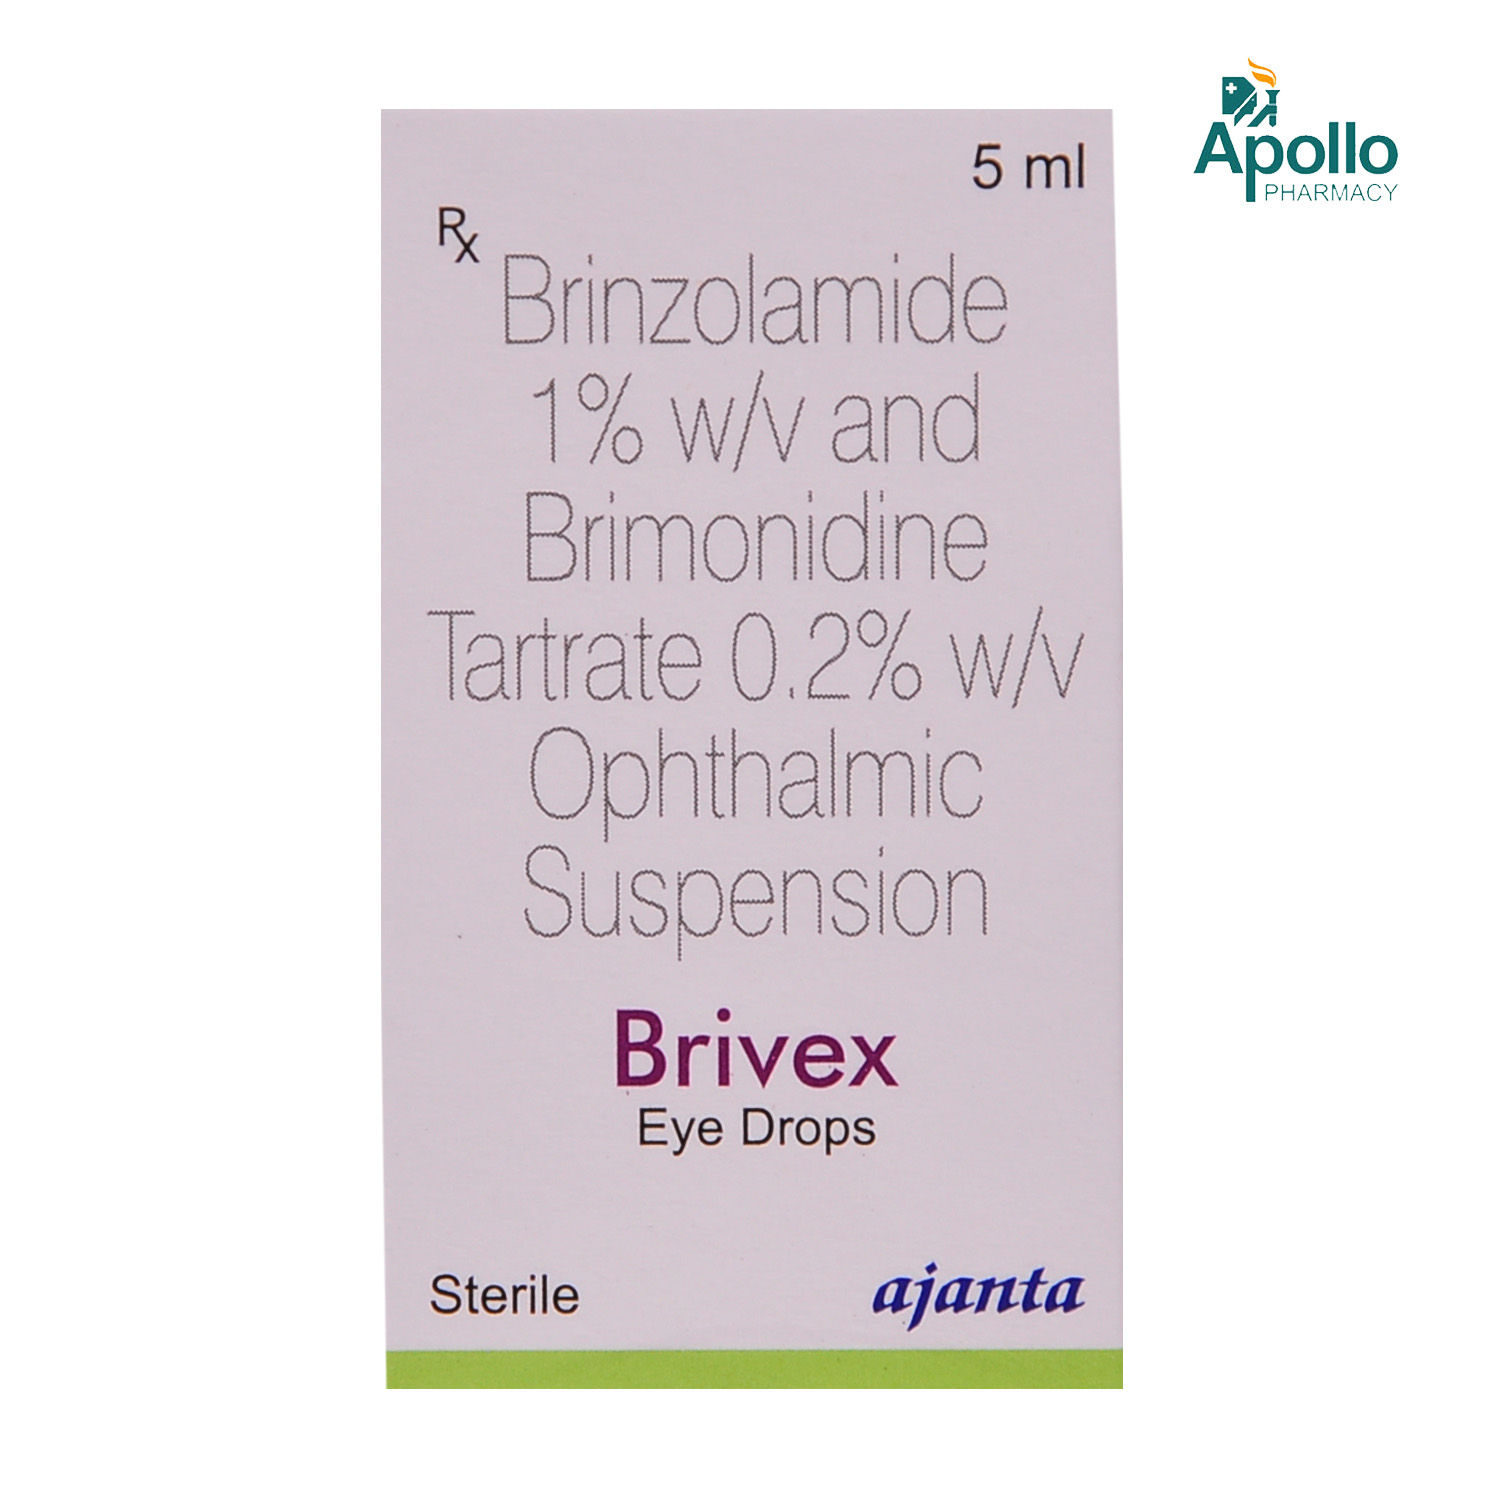 Buy Brivex Eye Drops 5 ml Online